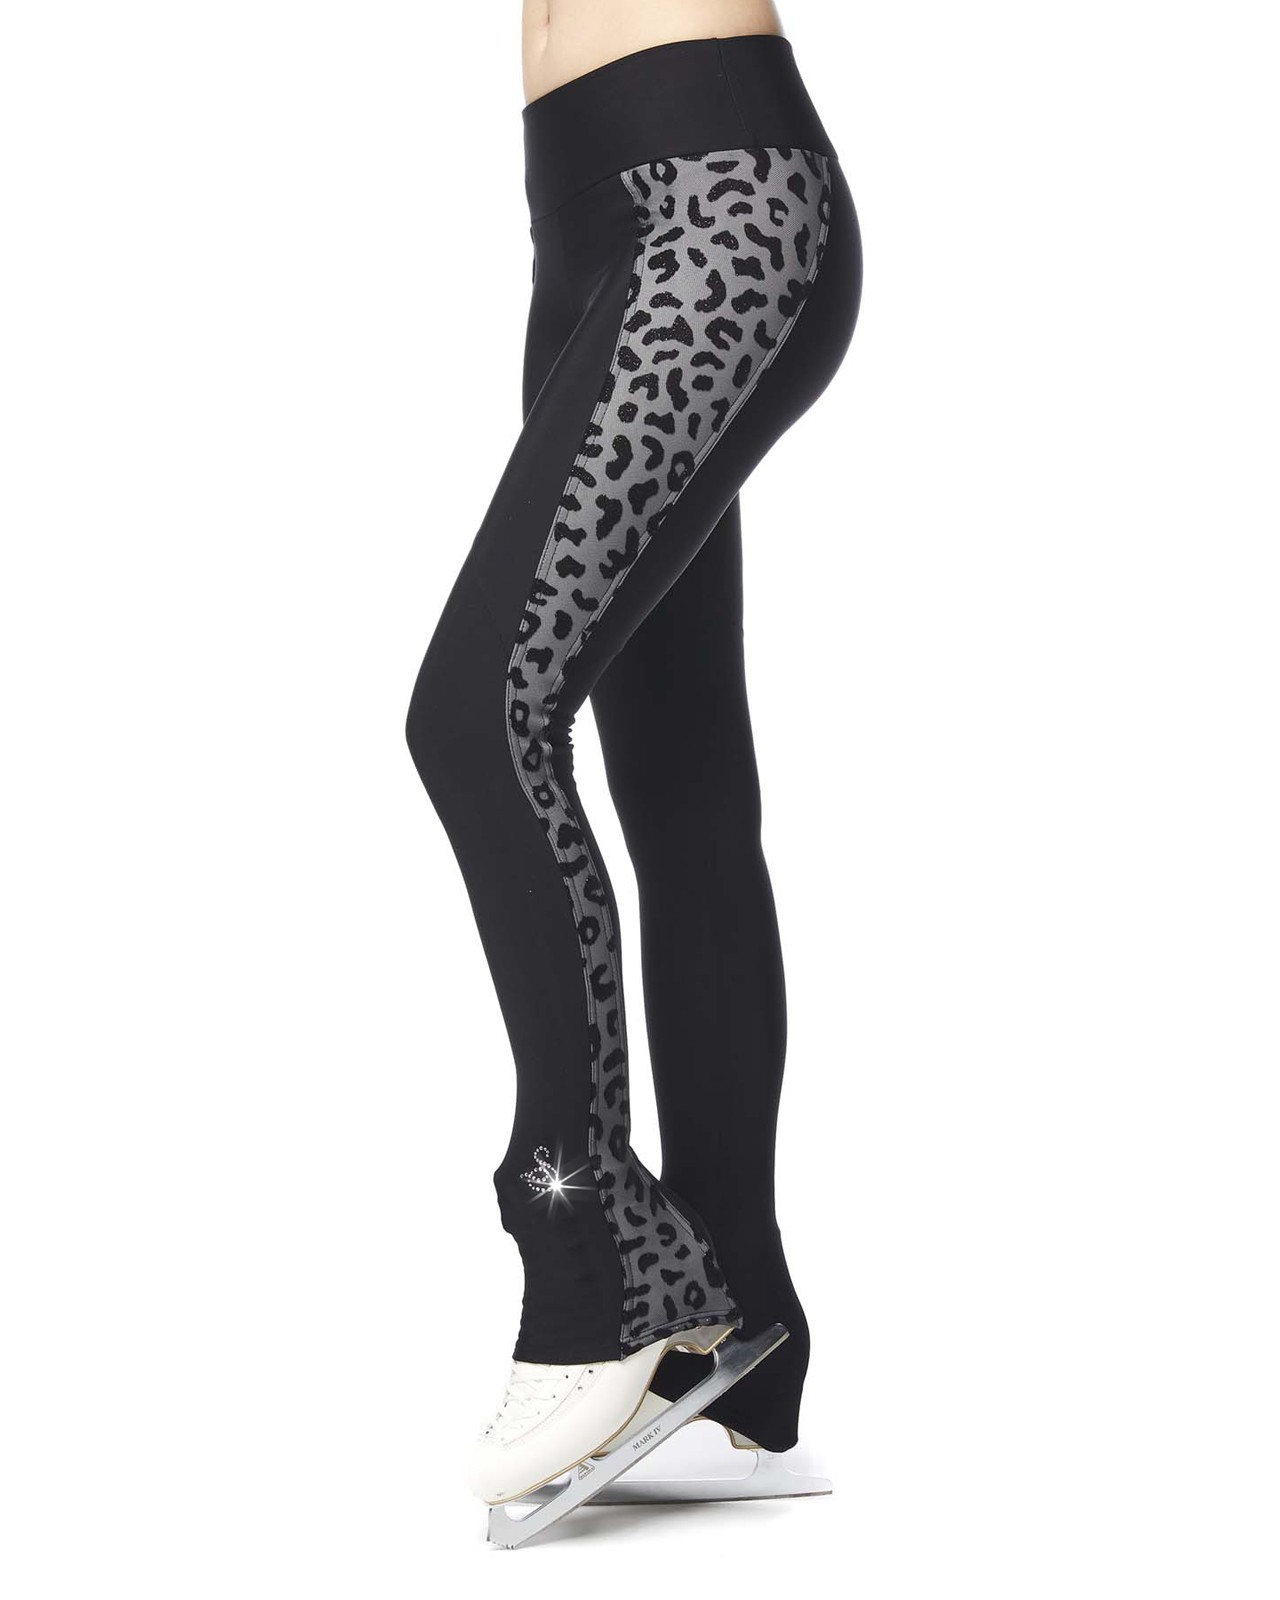 Thermal skating leggings with leopard-skin motif insert